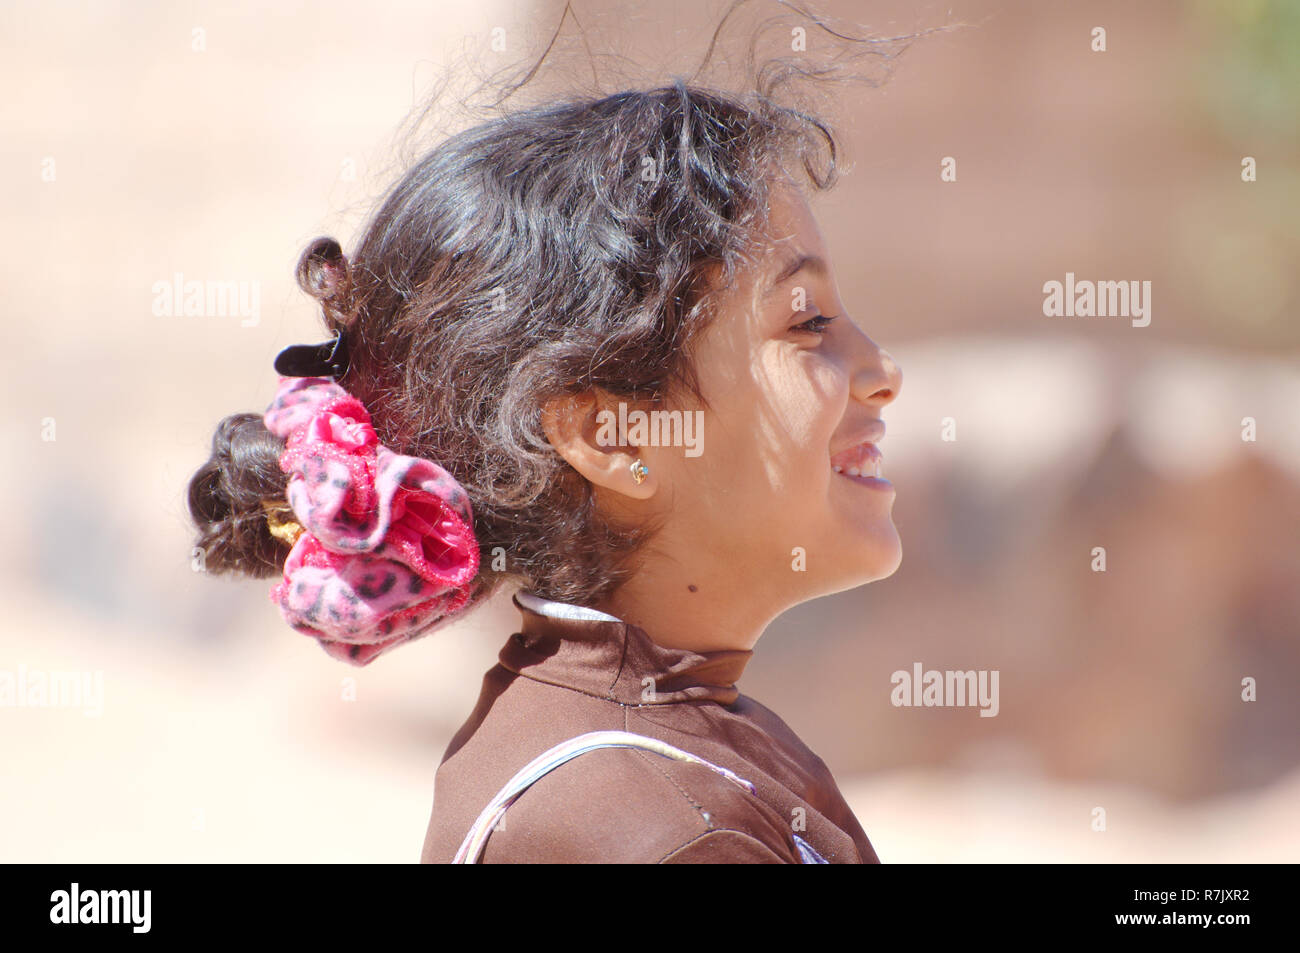 Portrait d'un Bédouin, jeune fille moderne de la péninsule du Sinaï, Égypte Banque D'Images